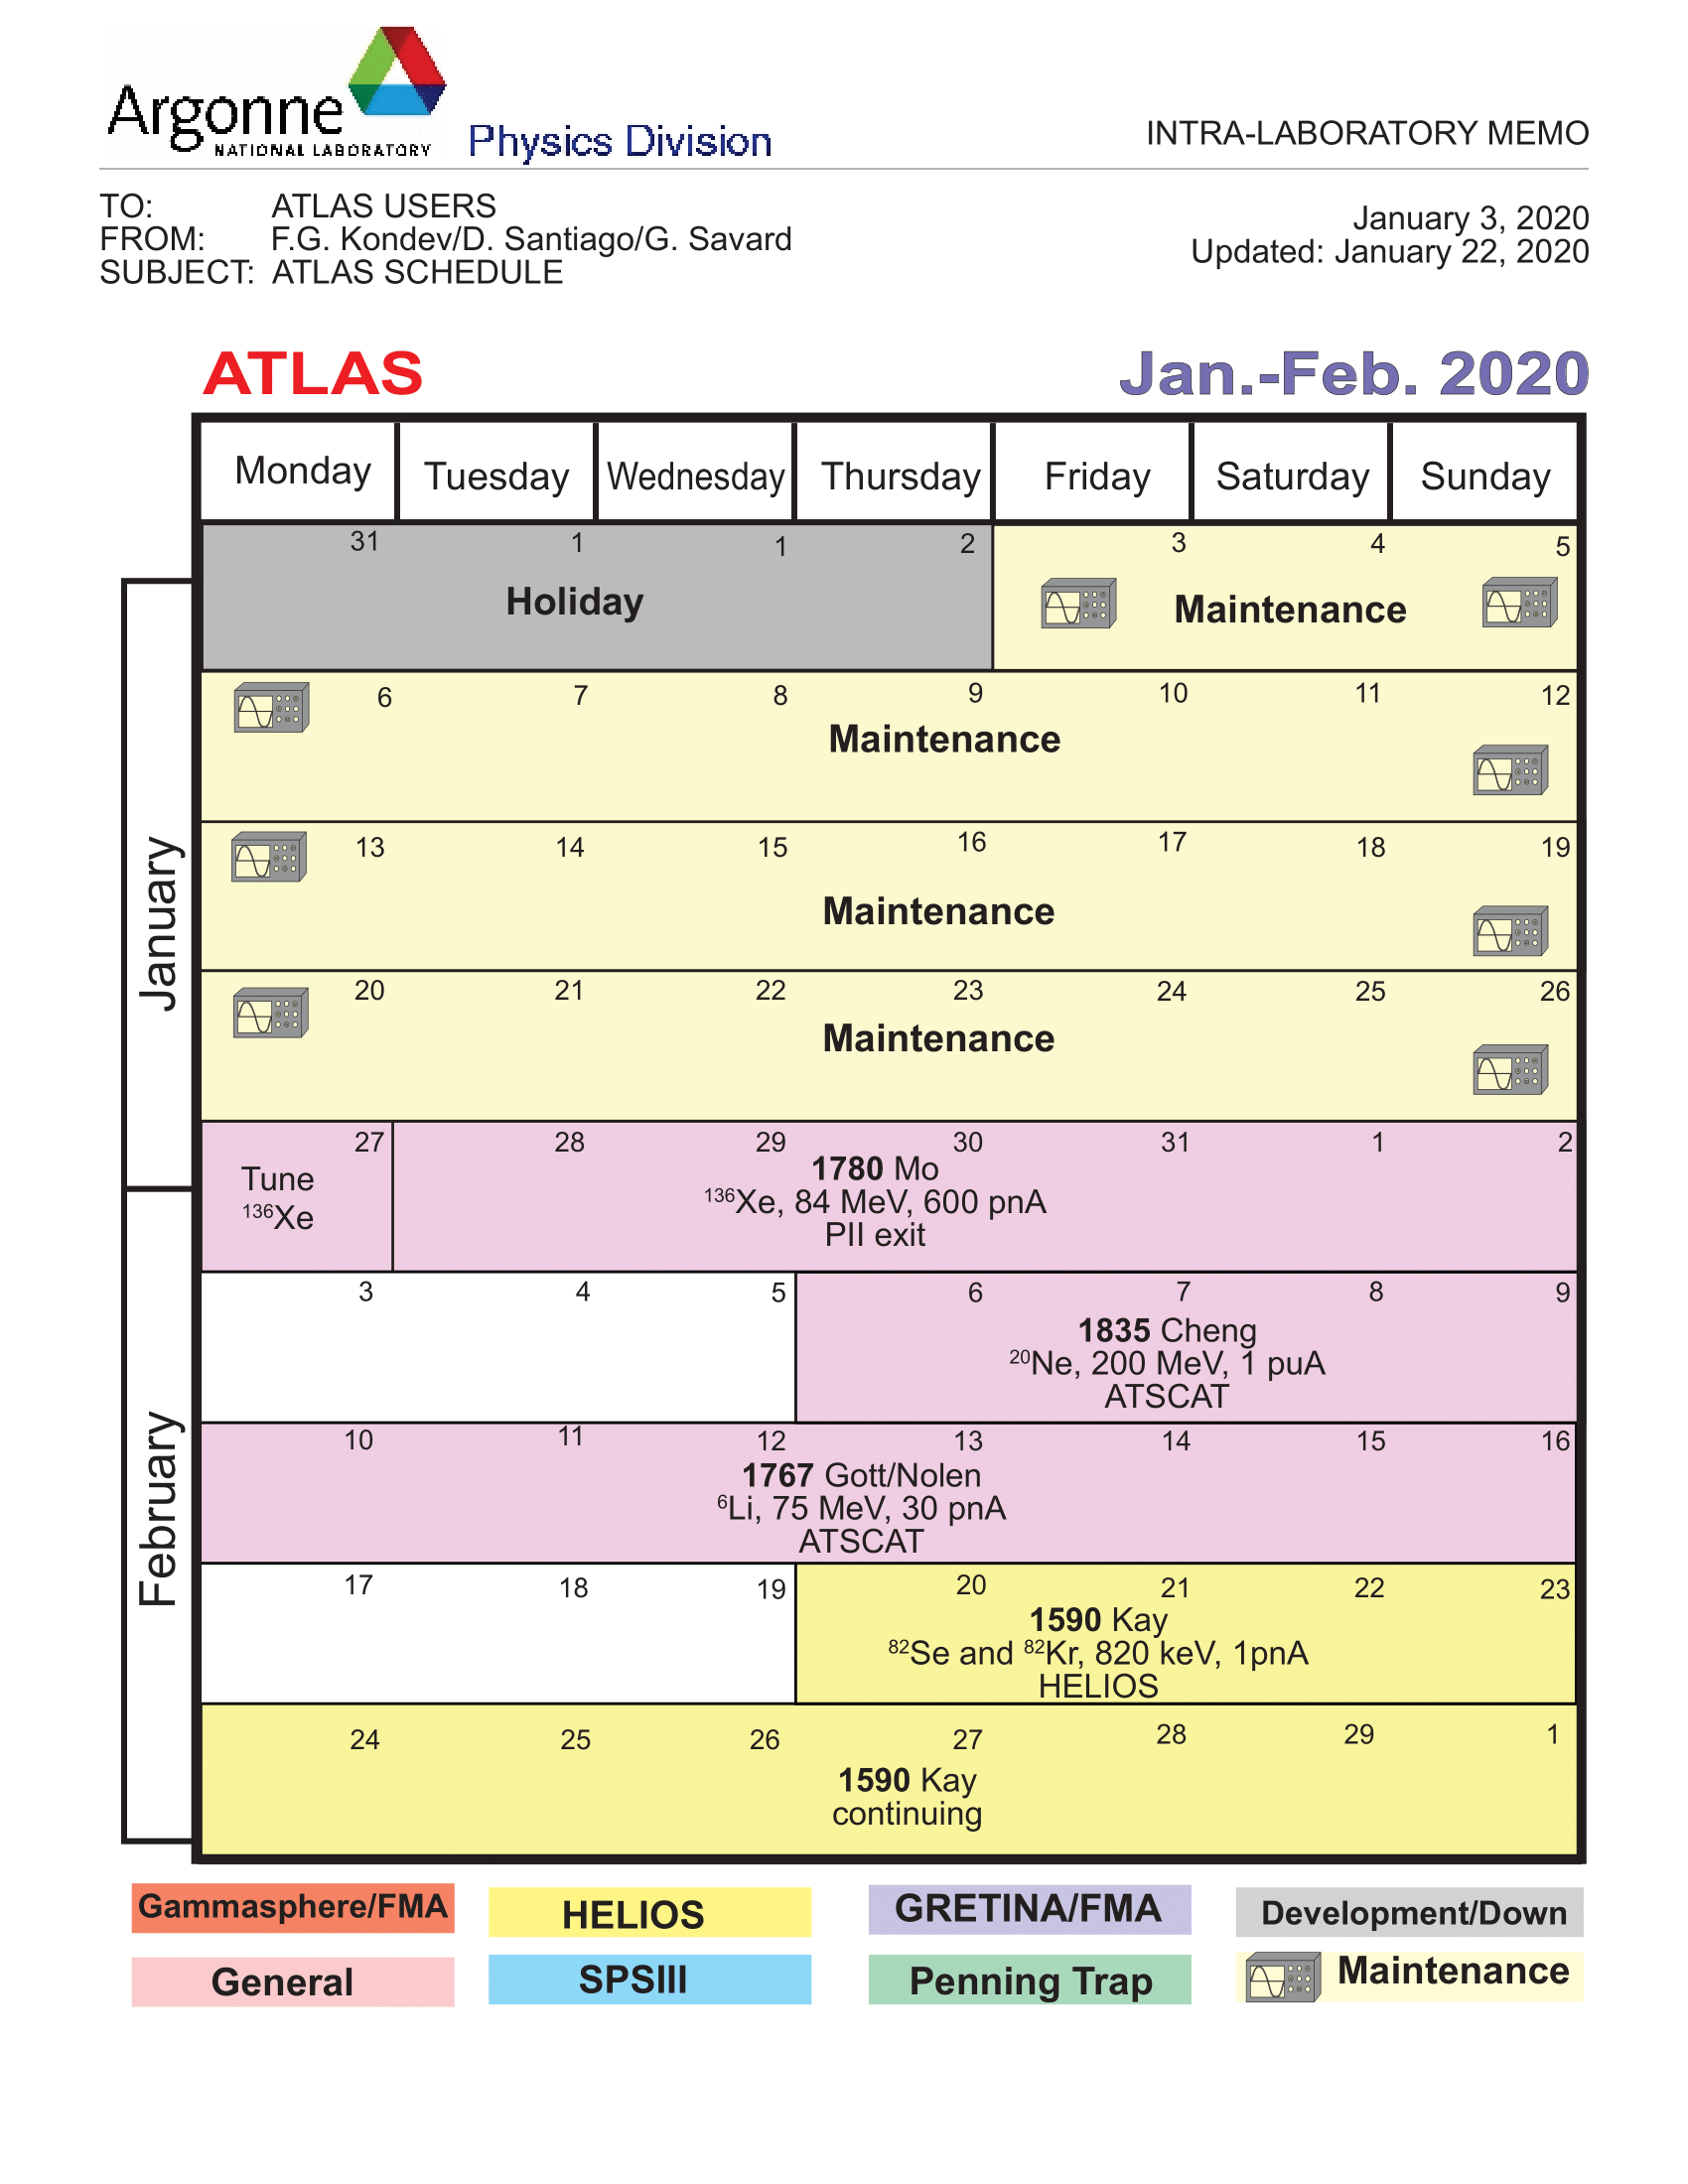 ATLAS Schedule